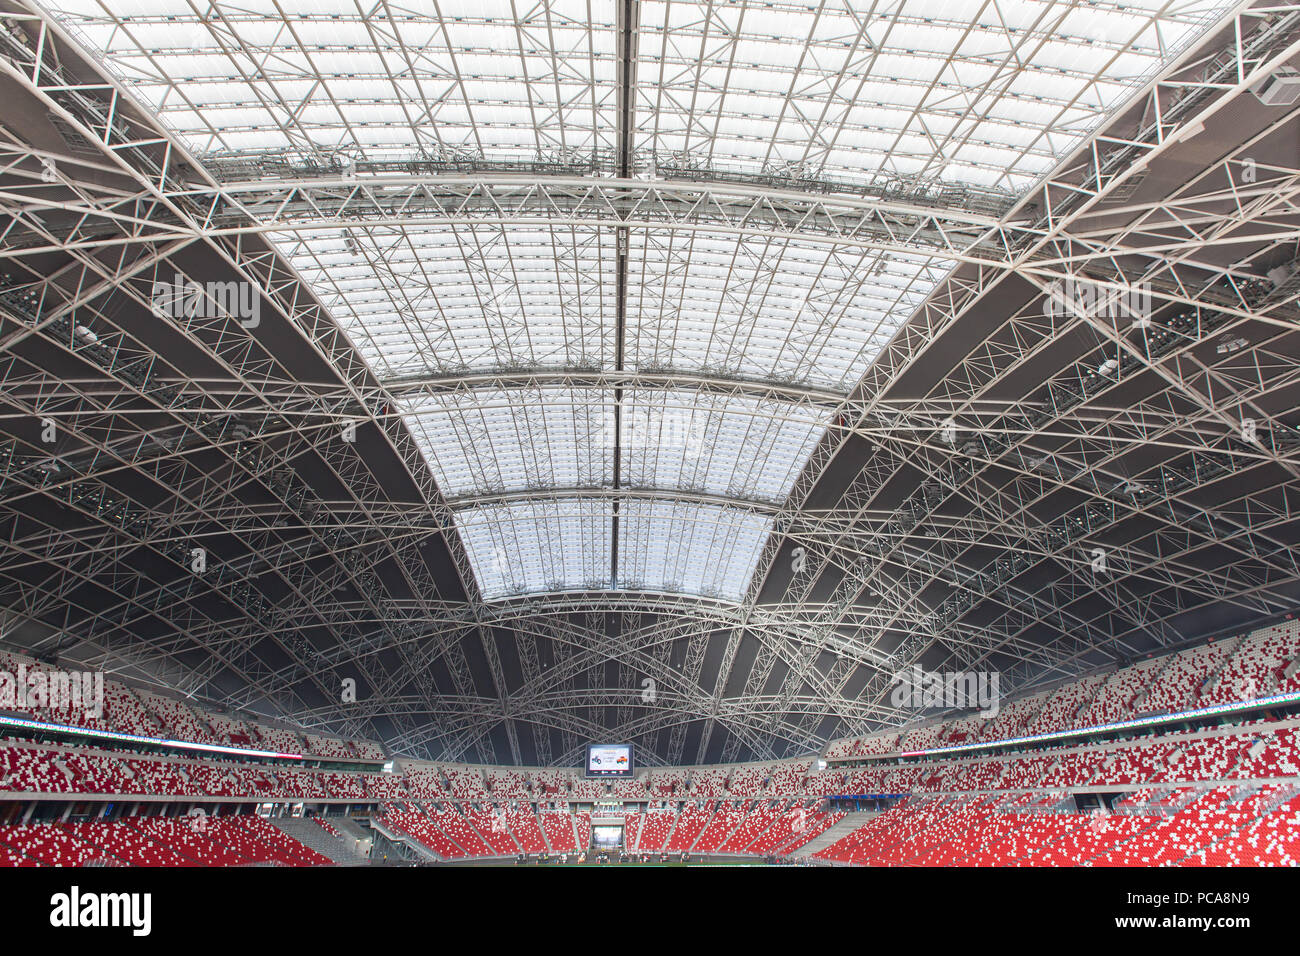 Architecture de toit d'intérieur massive au stade Singapore Sports Hub. Banque D'Images